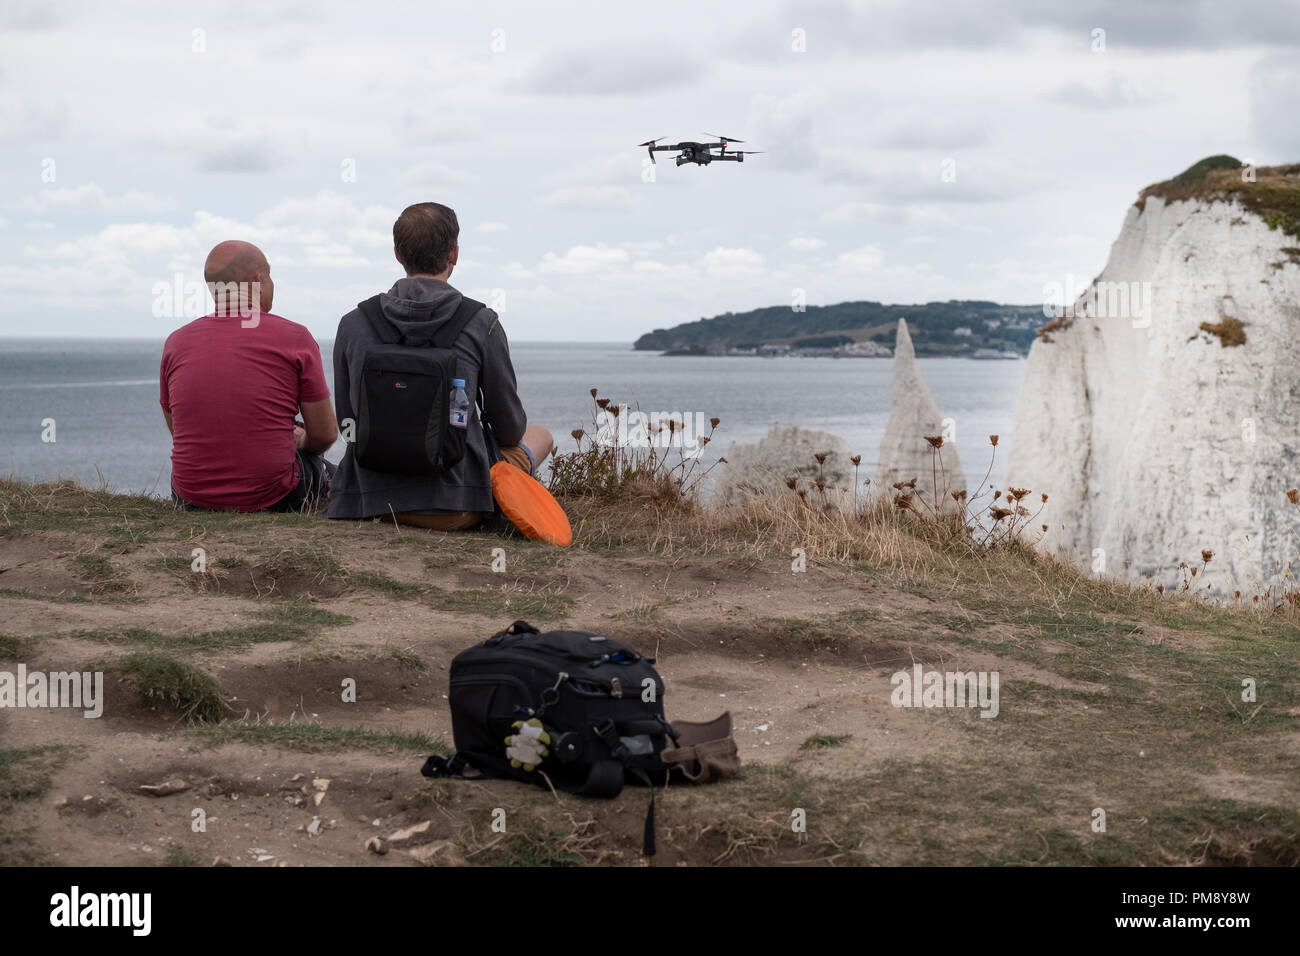 Ein Mann gerade eine Drohne schwebte er weg Fliegen ist auf einer Klippe an  der englischen Küste. wird er von einem anderen Mann neben ihm saß,  begleitet Stockfotografie - Alamy